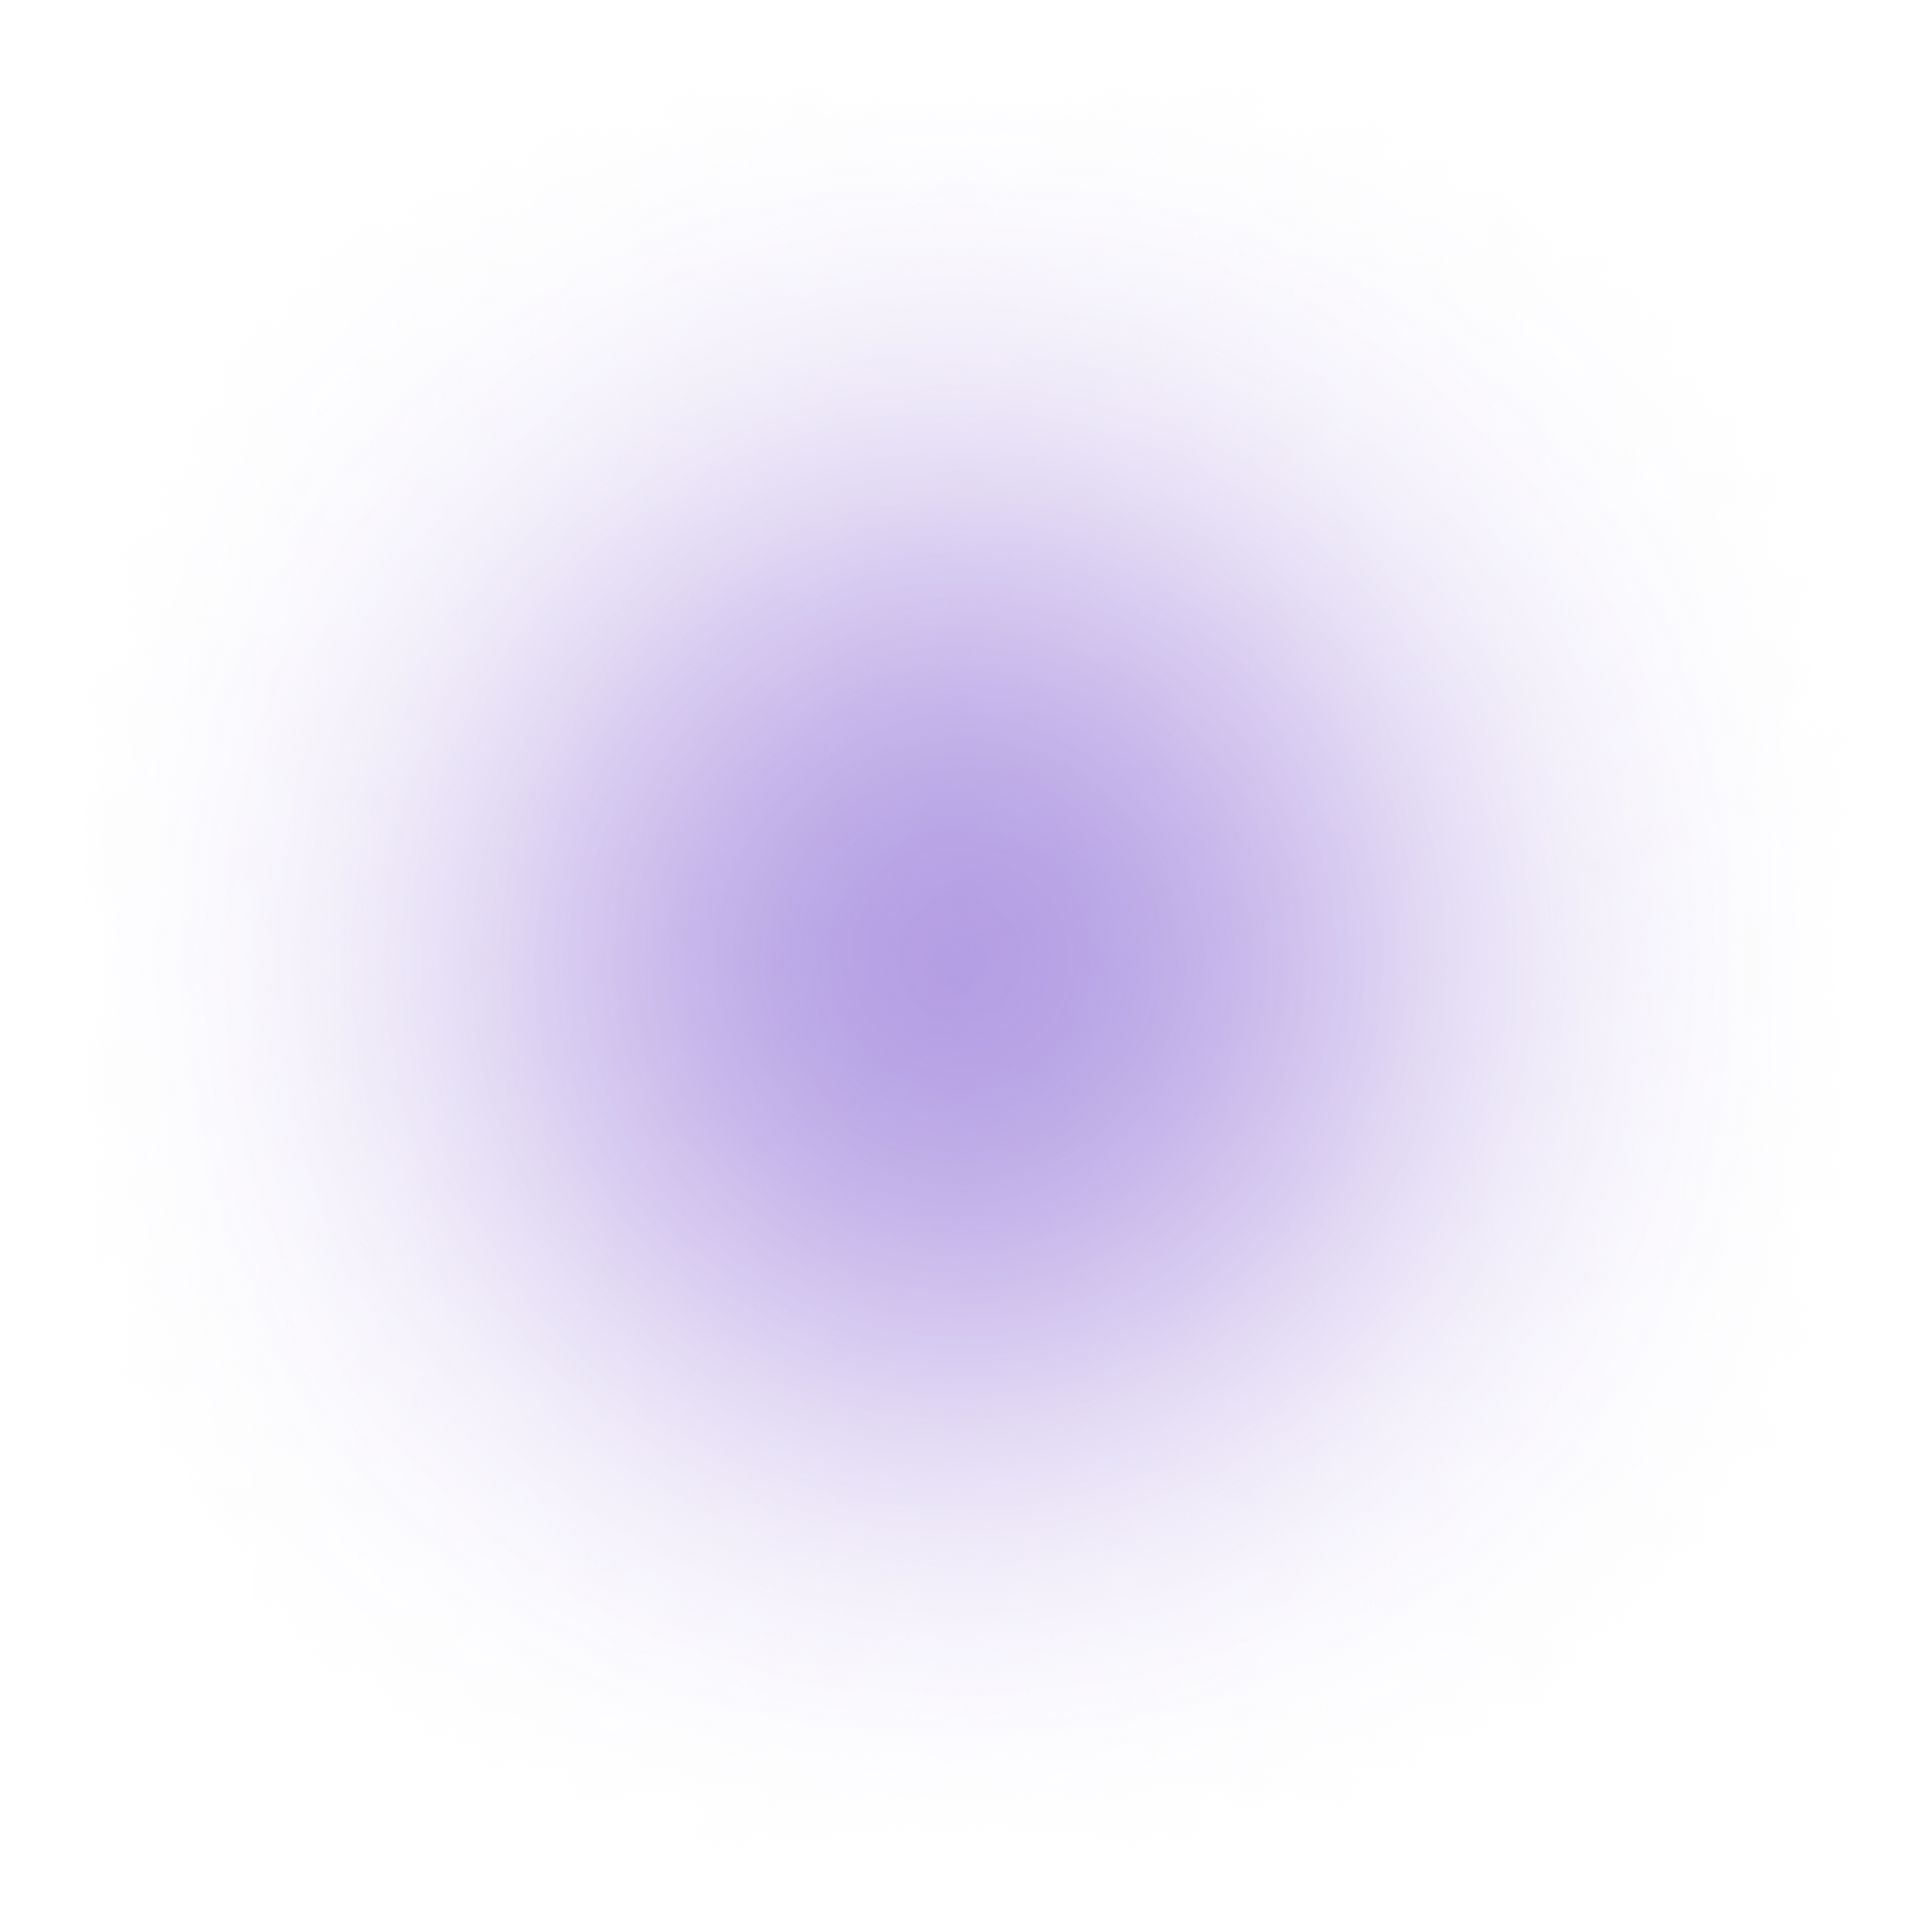 purple ellipse